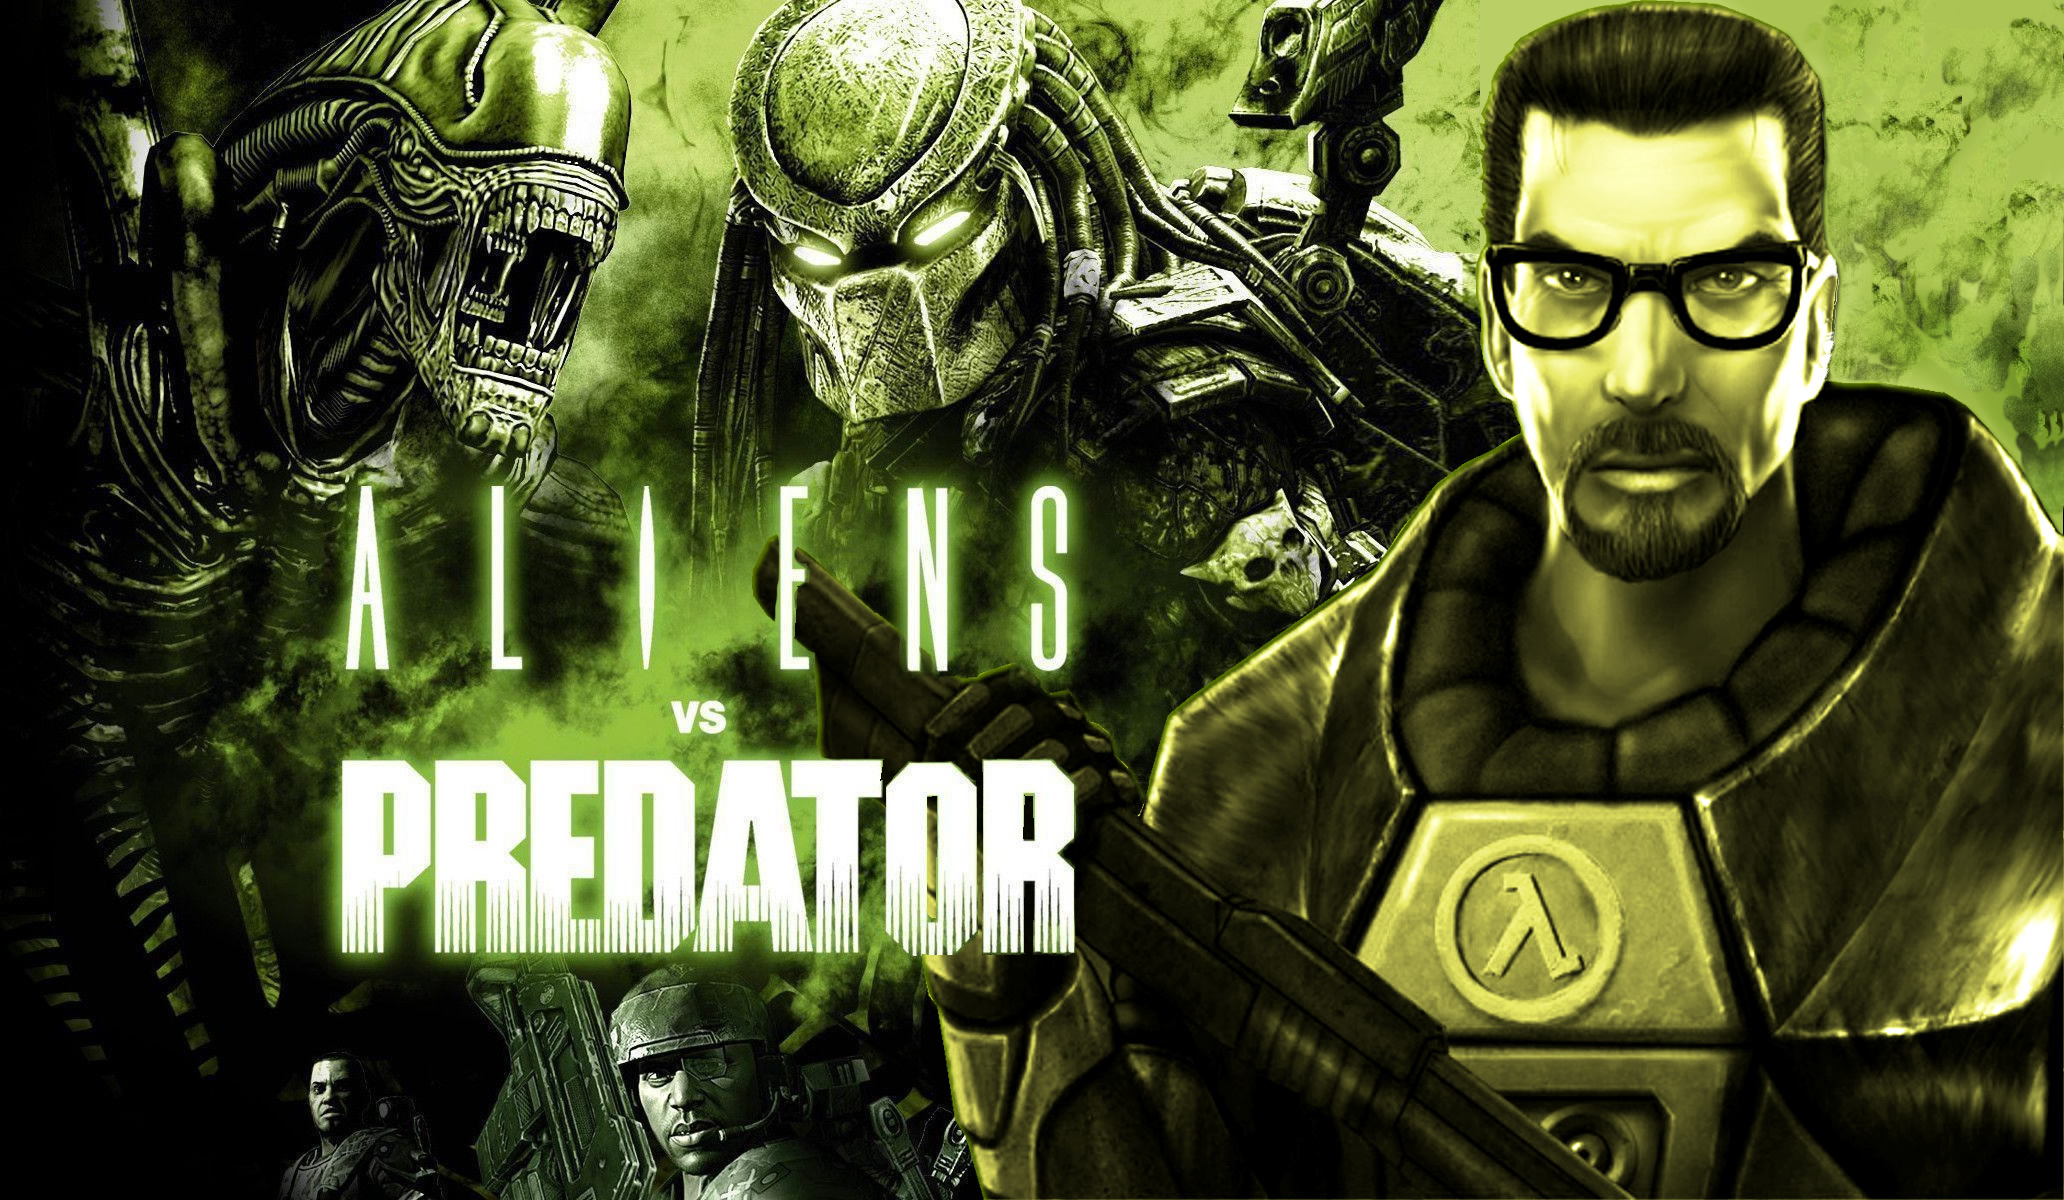 download the new for ios Nova Predator cs go skin